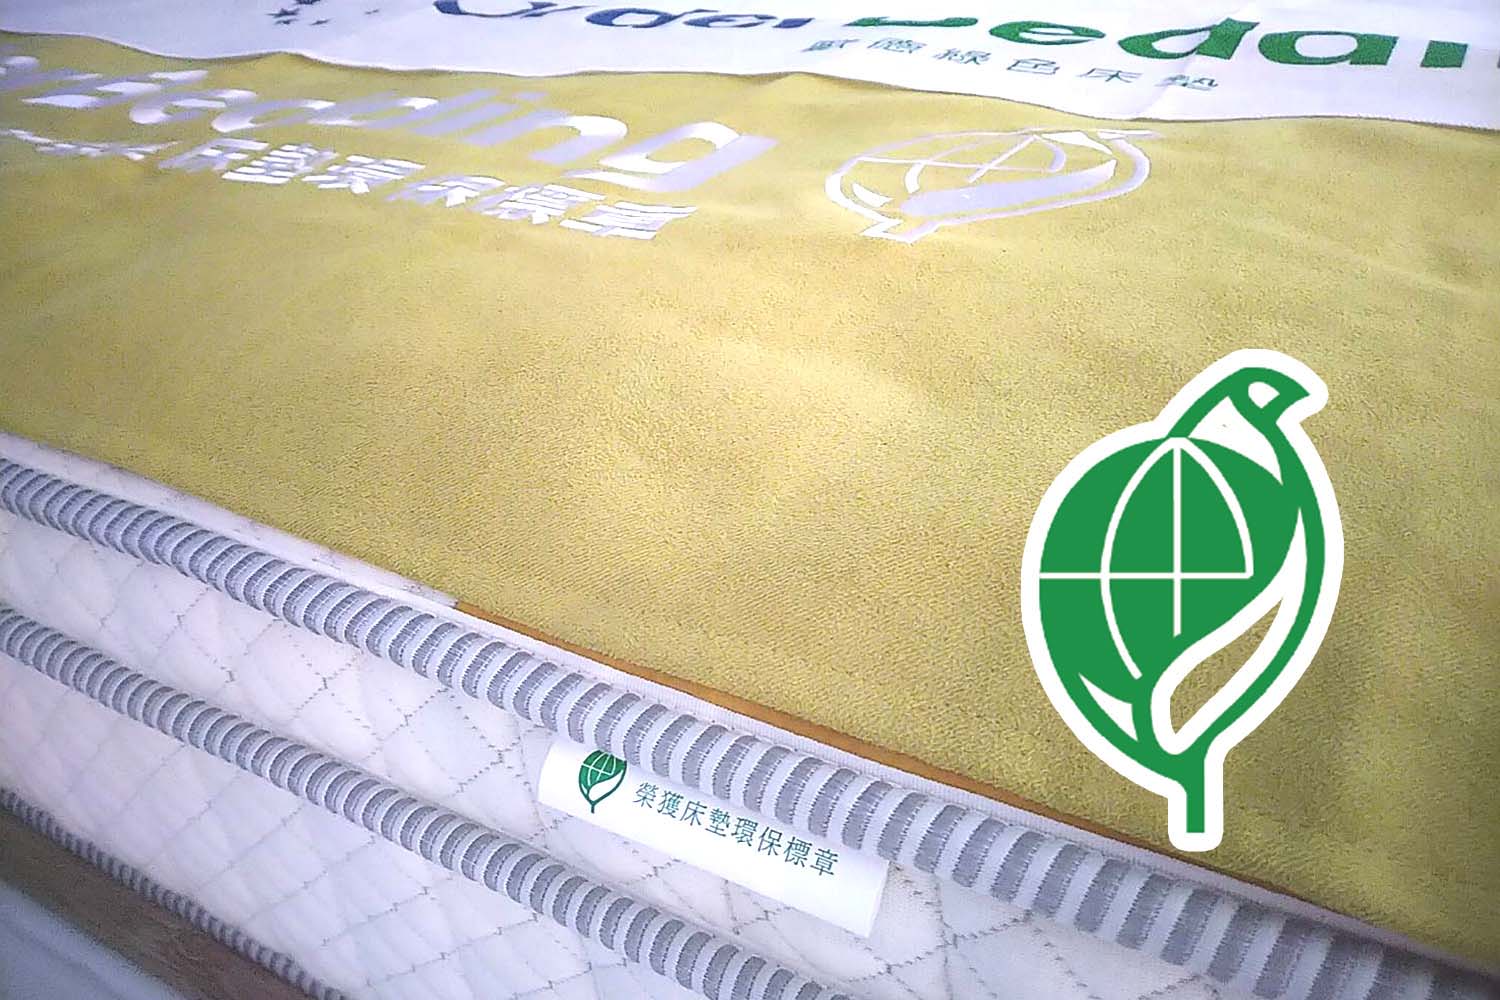 床墊具有環保床墊標章，表示「產品符合可回收、低污染、省資源」;